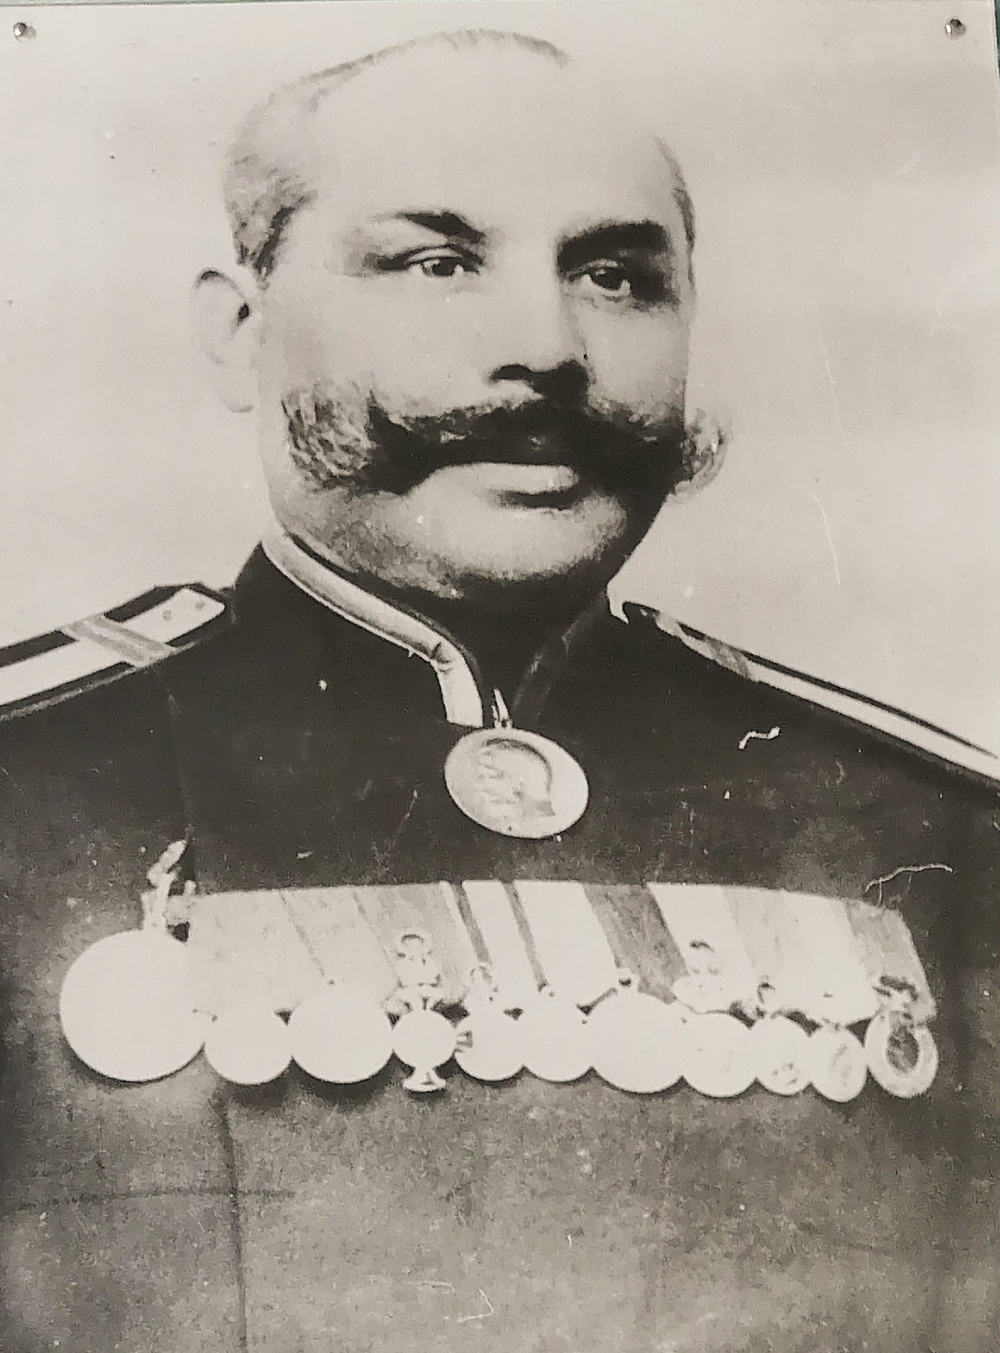 Конно-полицейский урядник Омского уезда Константин Свиридов,1910 г.